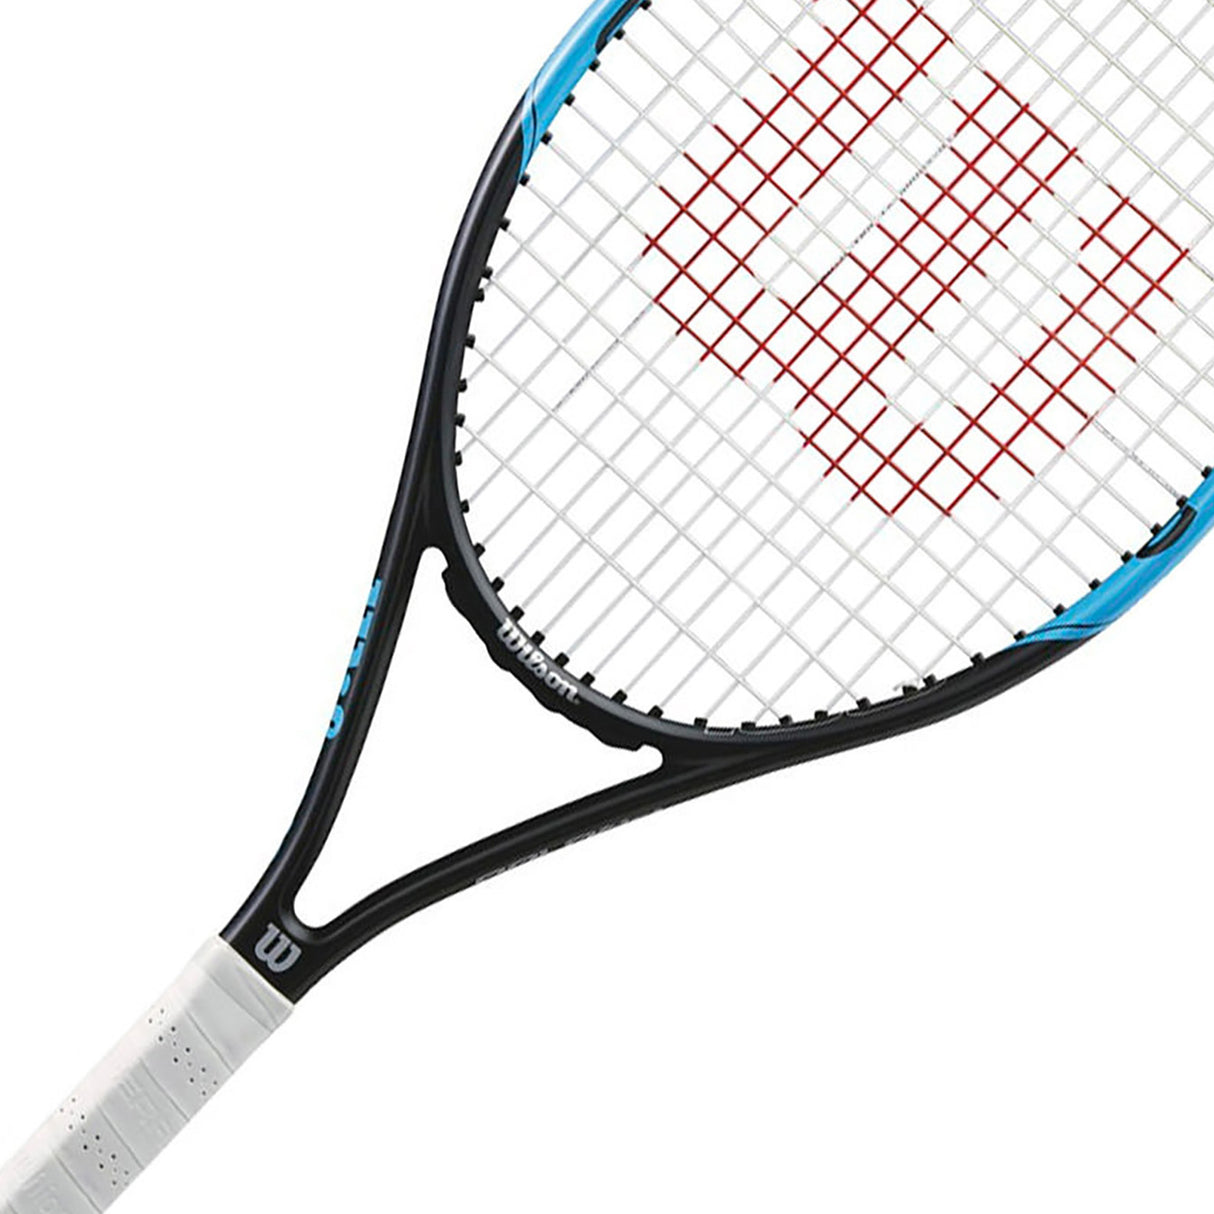 Wilson Monfils Pro 100 Tennis Racquet (4.375)